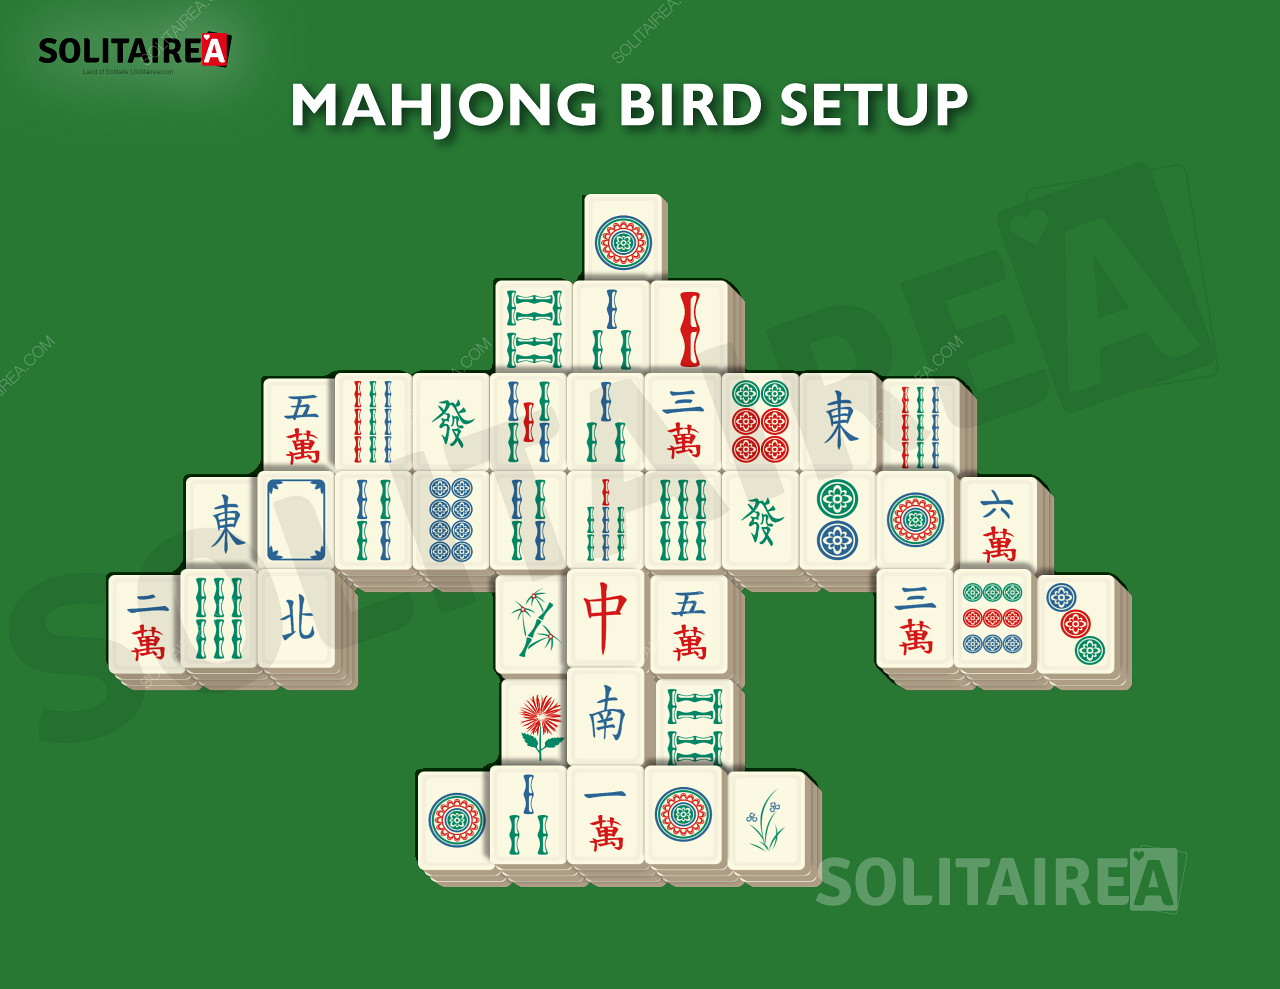 Mahjong Bird setup and strategy